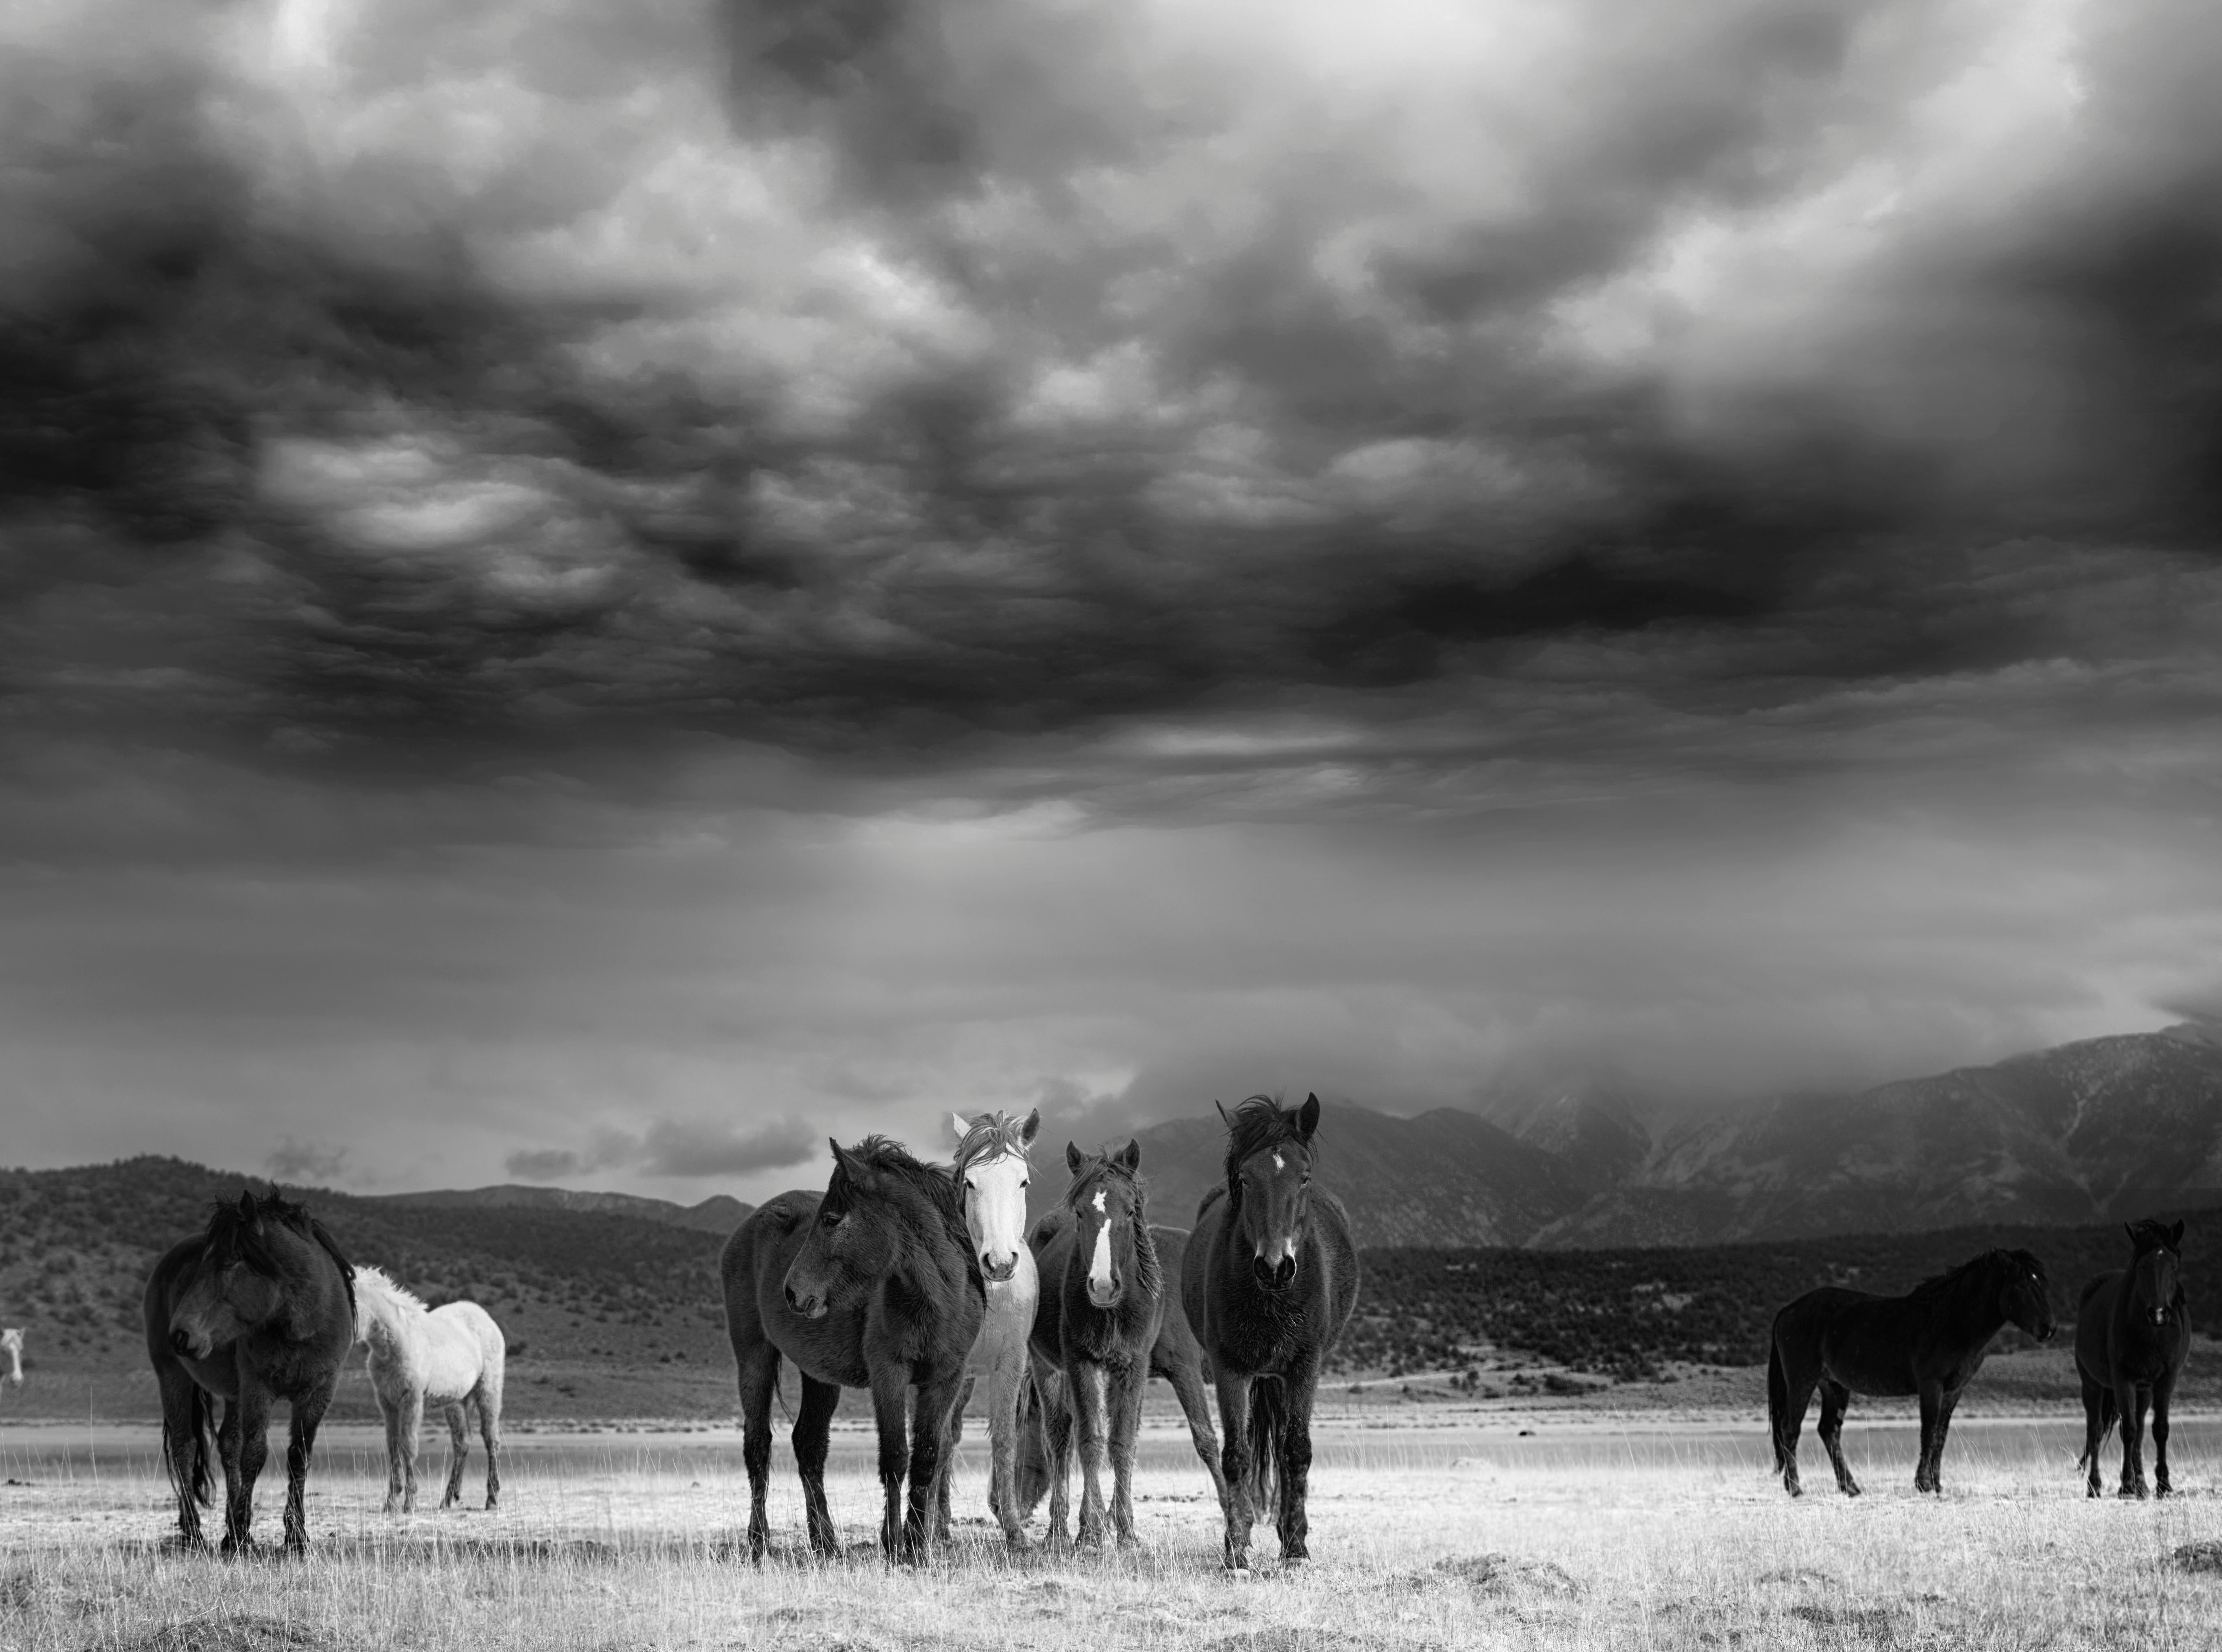 Animal Print Shane Russeck - "The Calm" 28x40 Photographie en noir et blanc signée de chevaux sauvages, Mustangs  